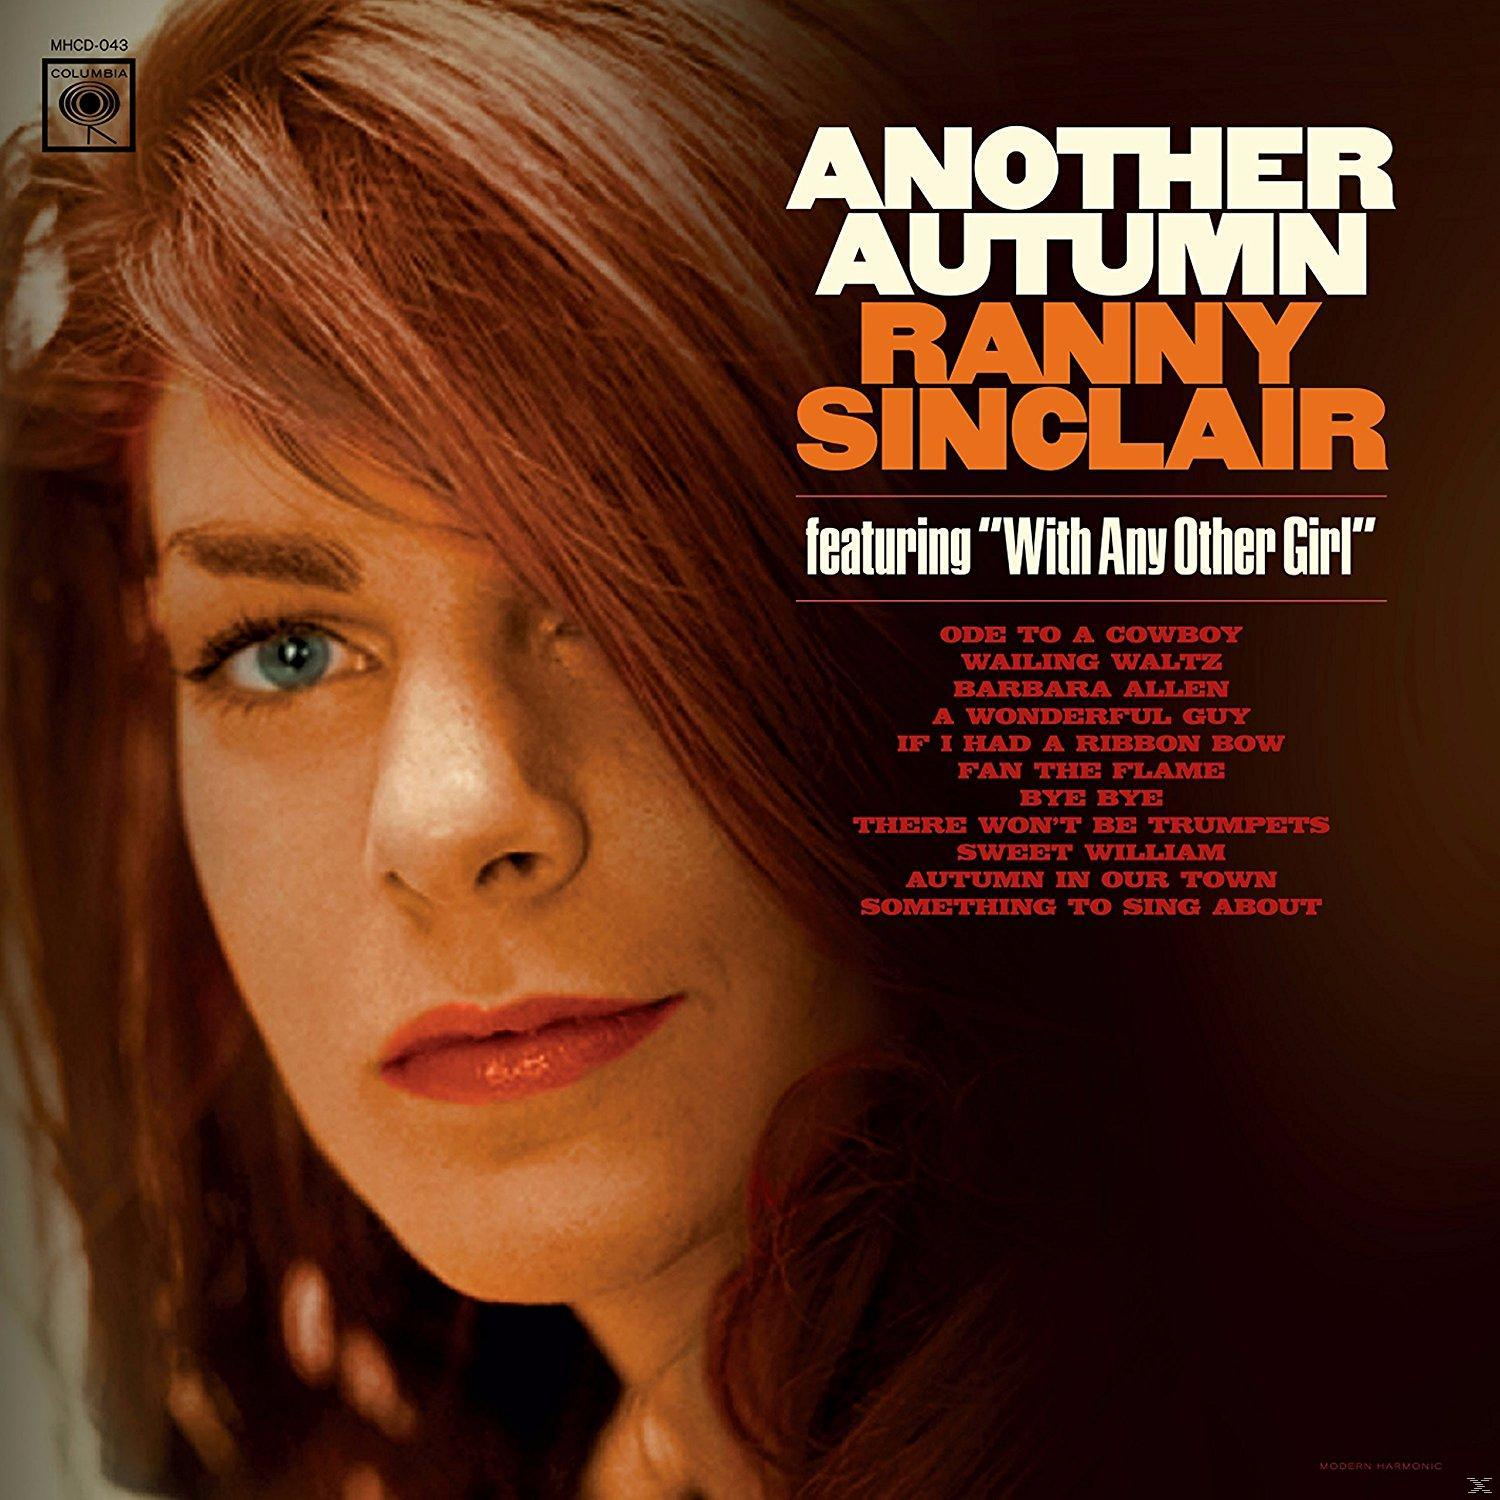 Sinclair (CD) - - (CD) Another Ranny Autumn